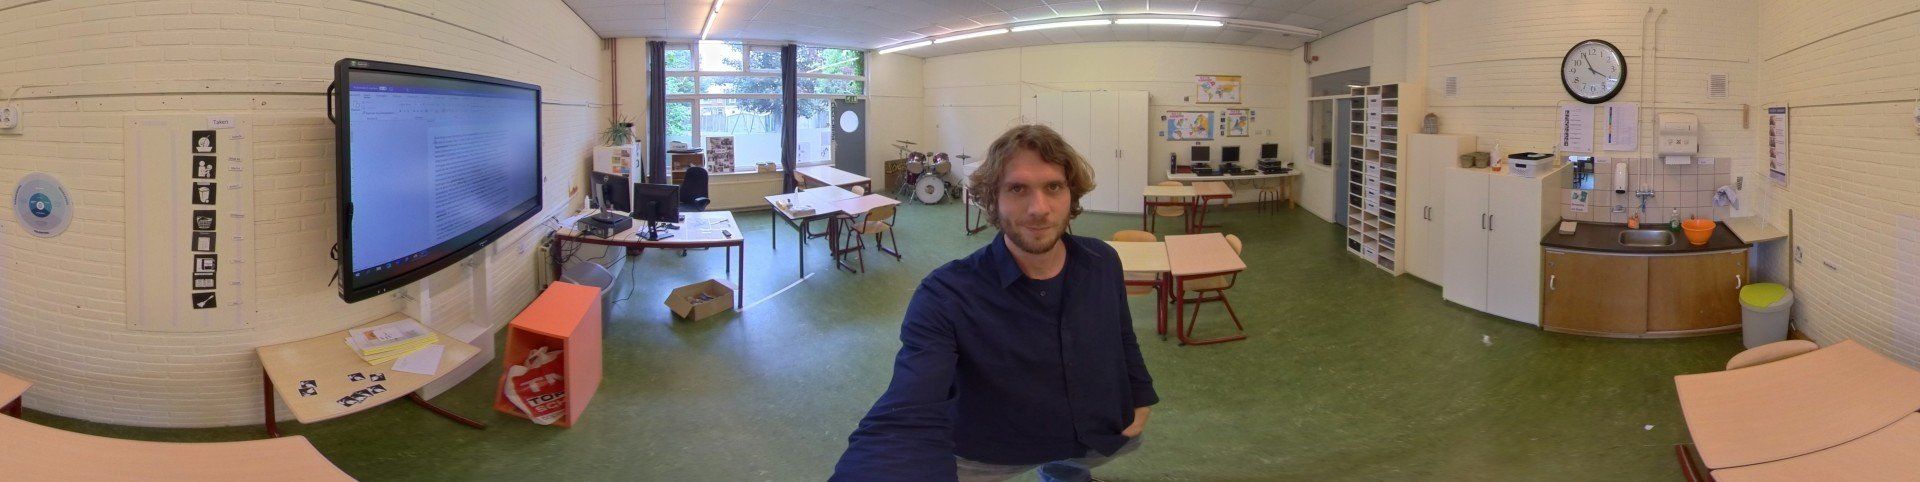 Joeri Blomberg in zijn klaslokaal